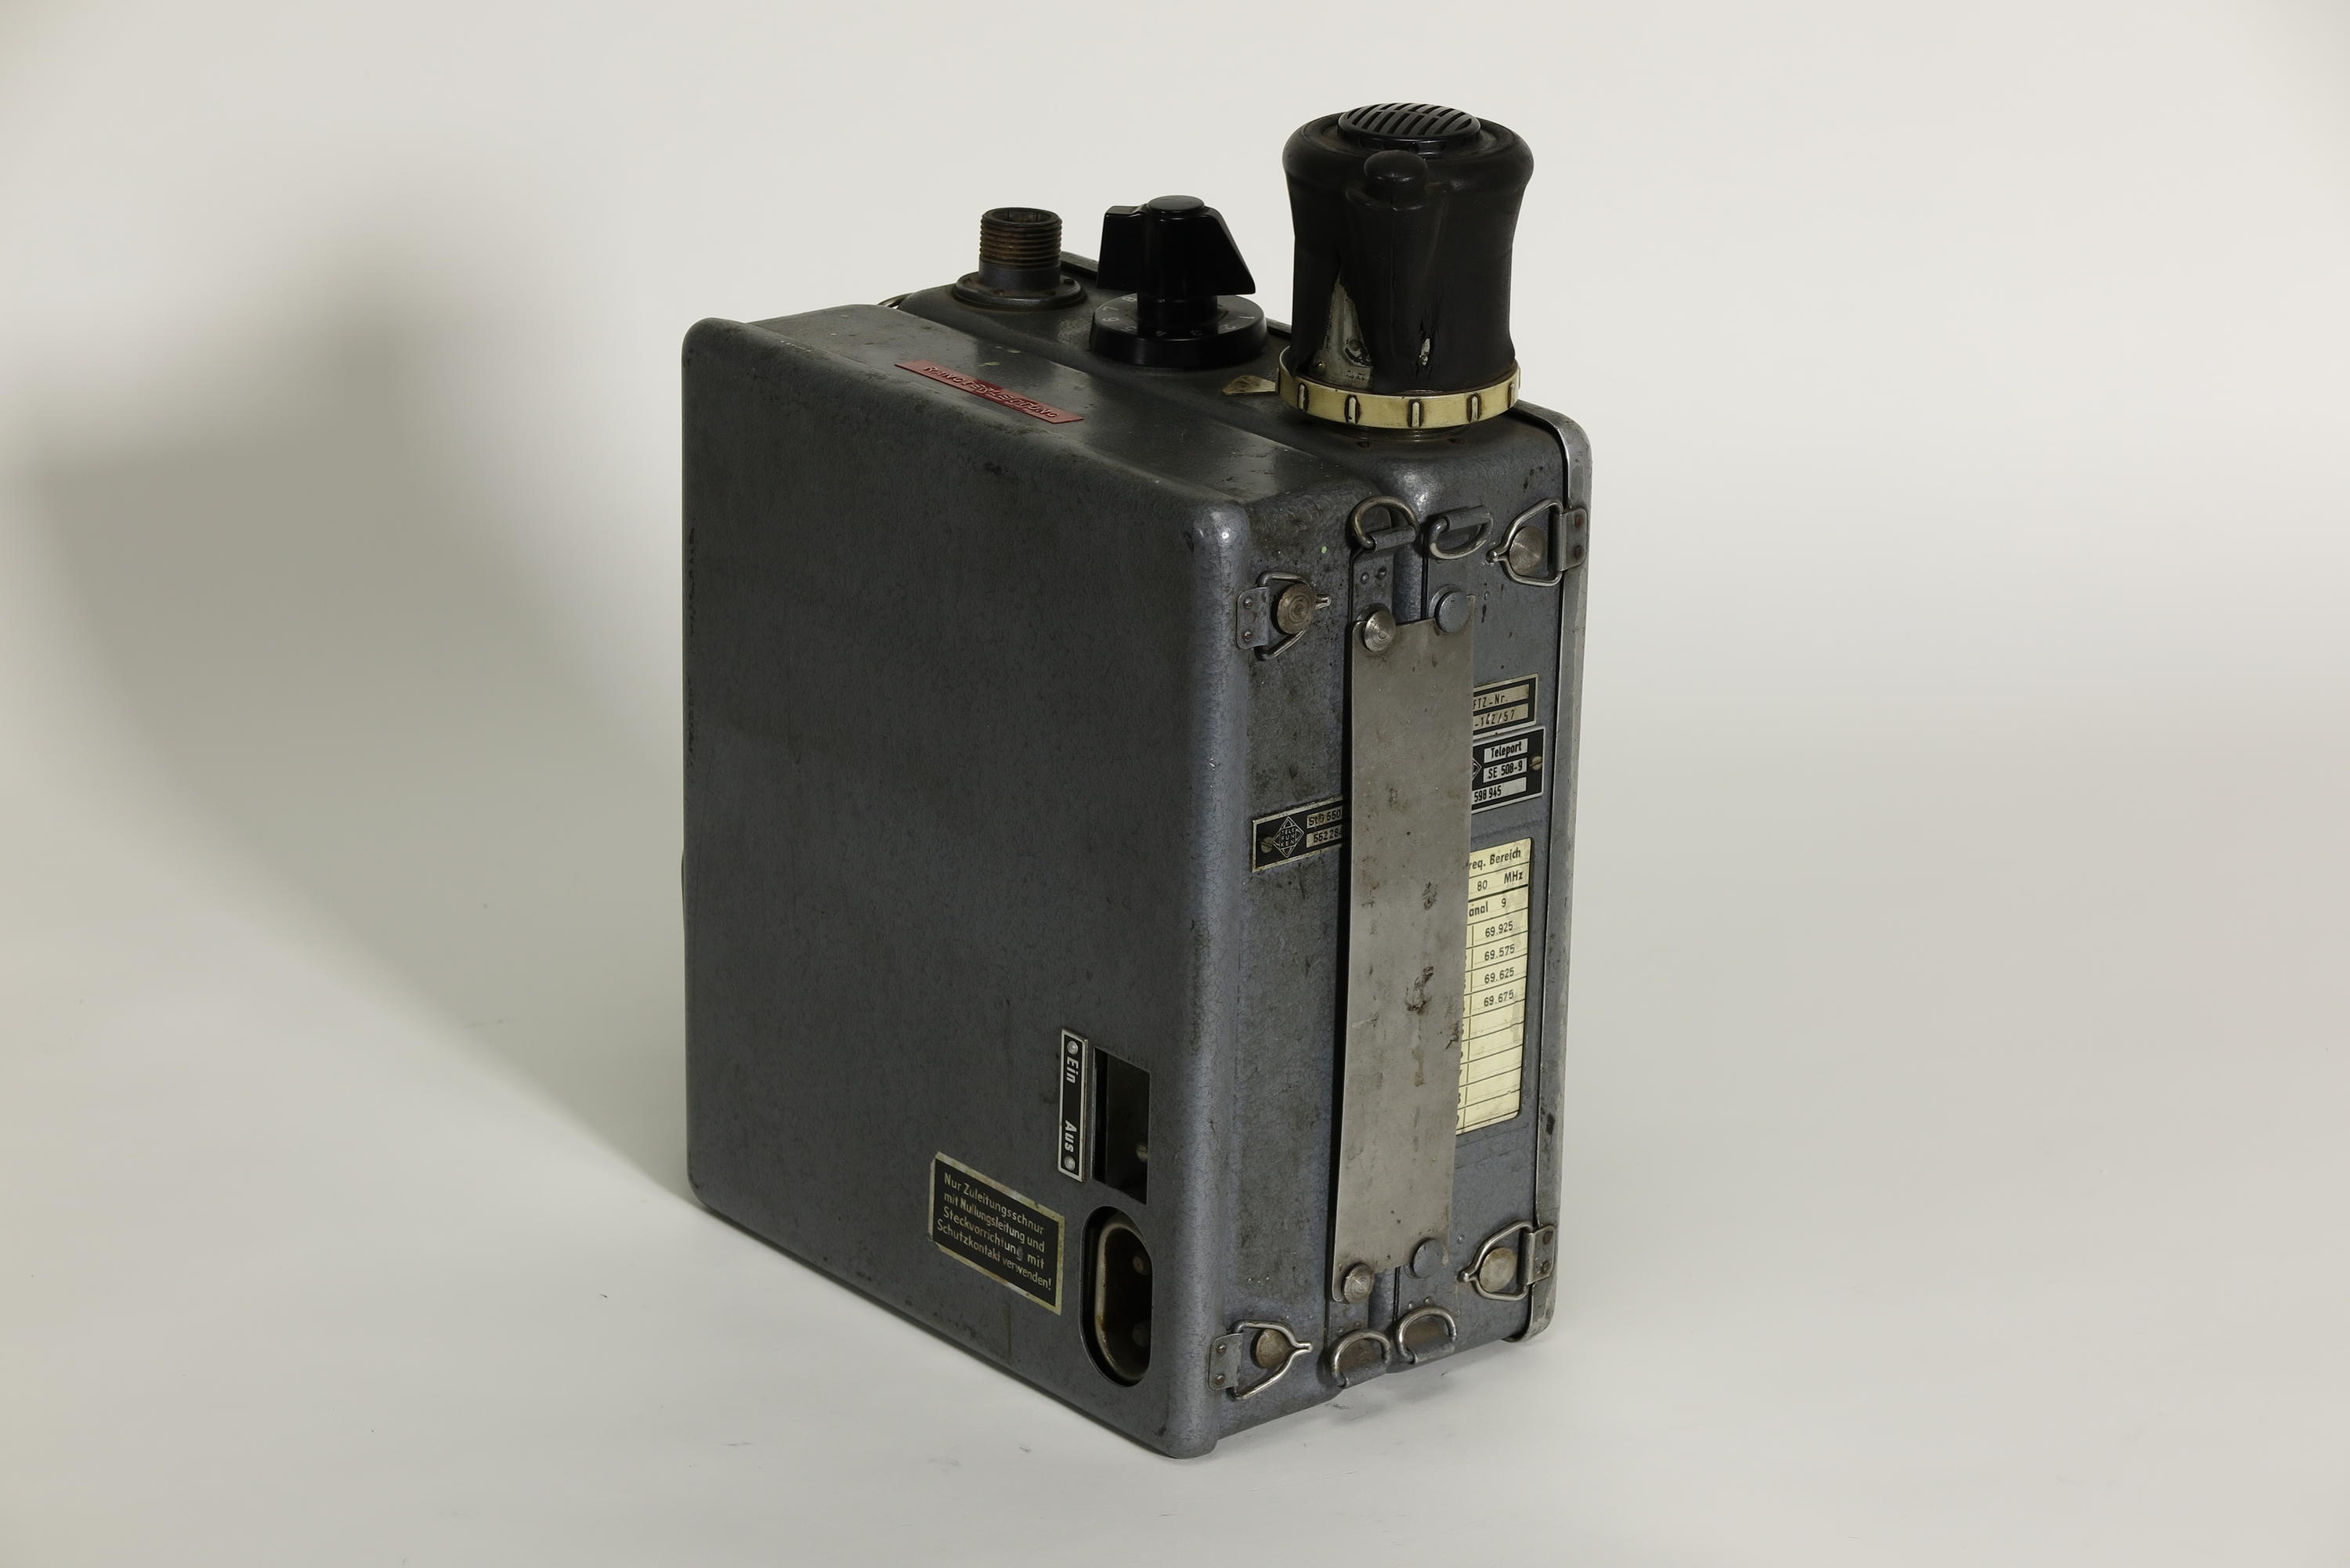 UKW-Sende-Empfangsgerät Telefunken Teleport SE 508-9 mit Stromwandler Telefunken StG 550/2 (Deutsches Technikmuseum CC BY)